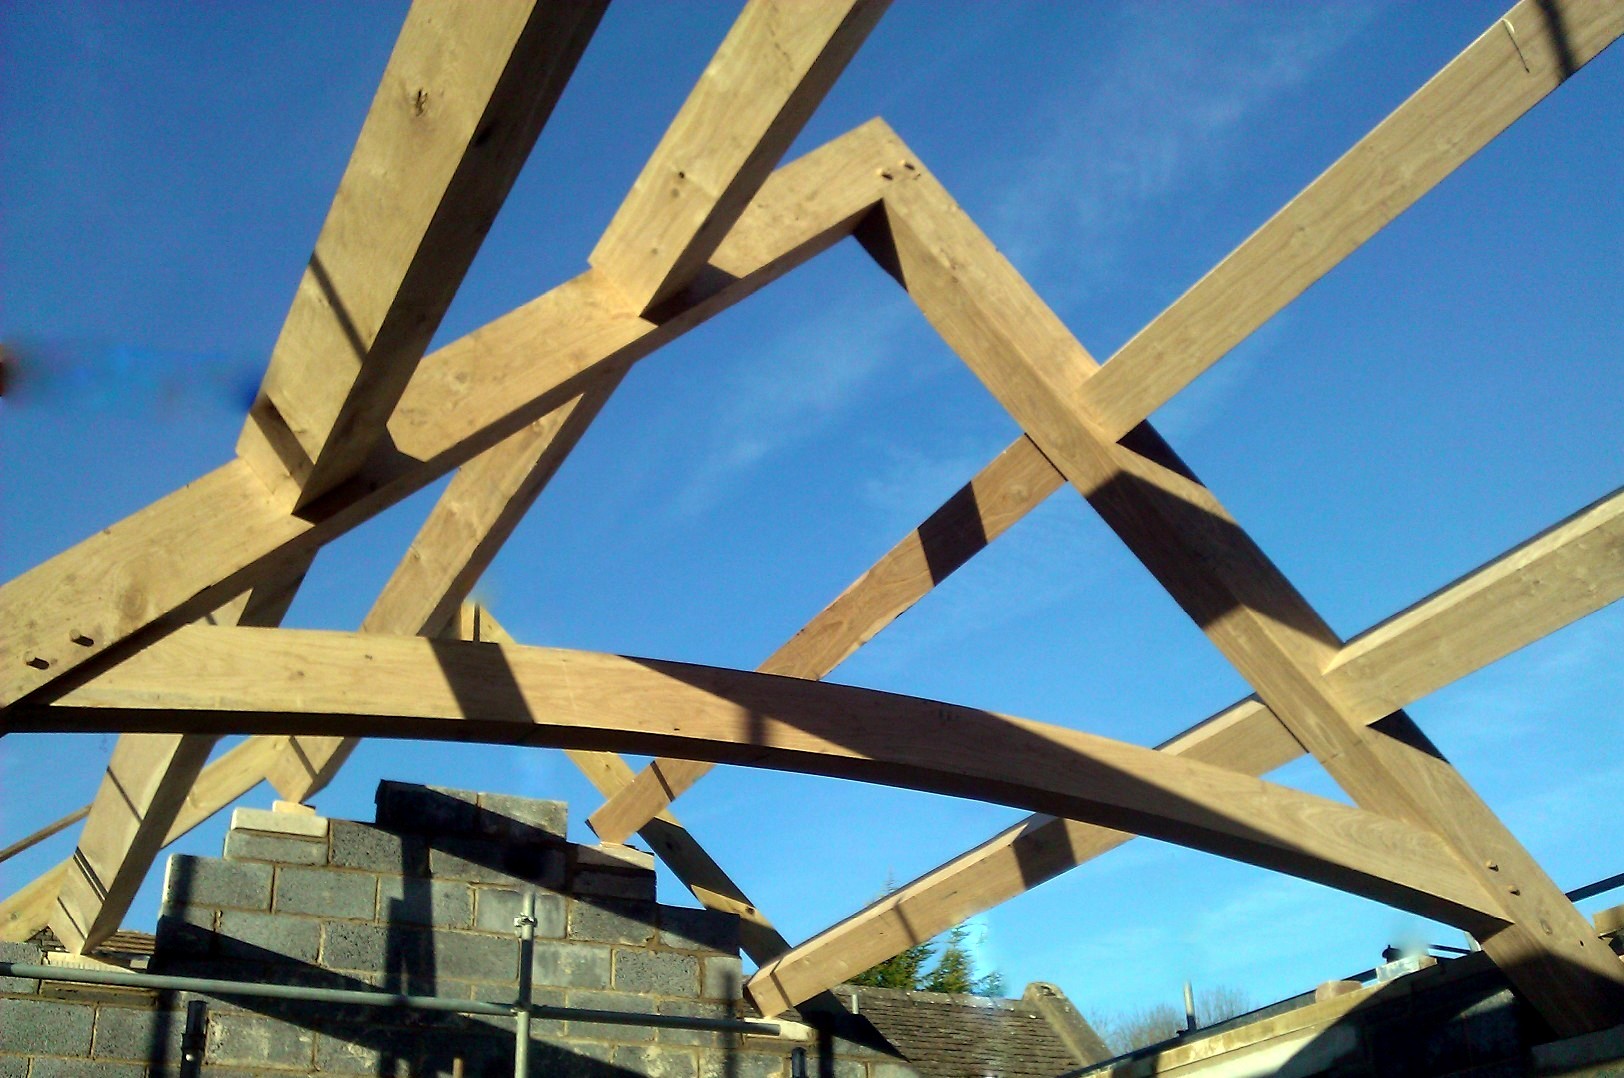 Curved tie oak truss sets